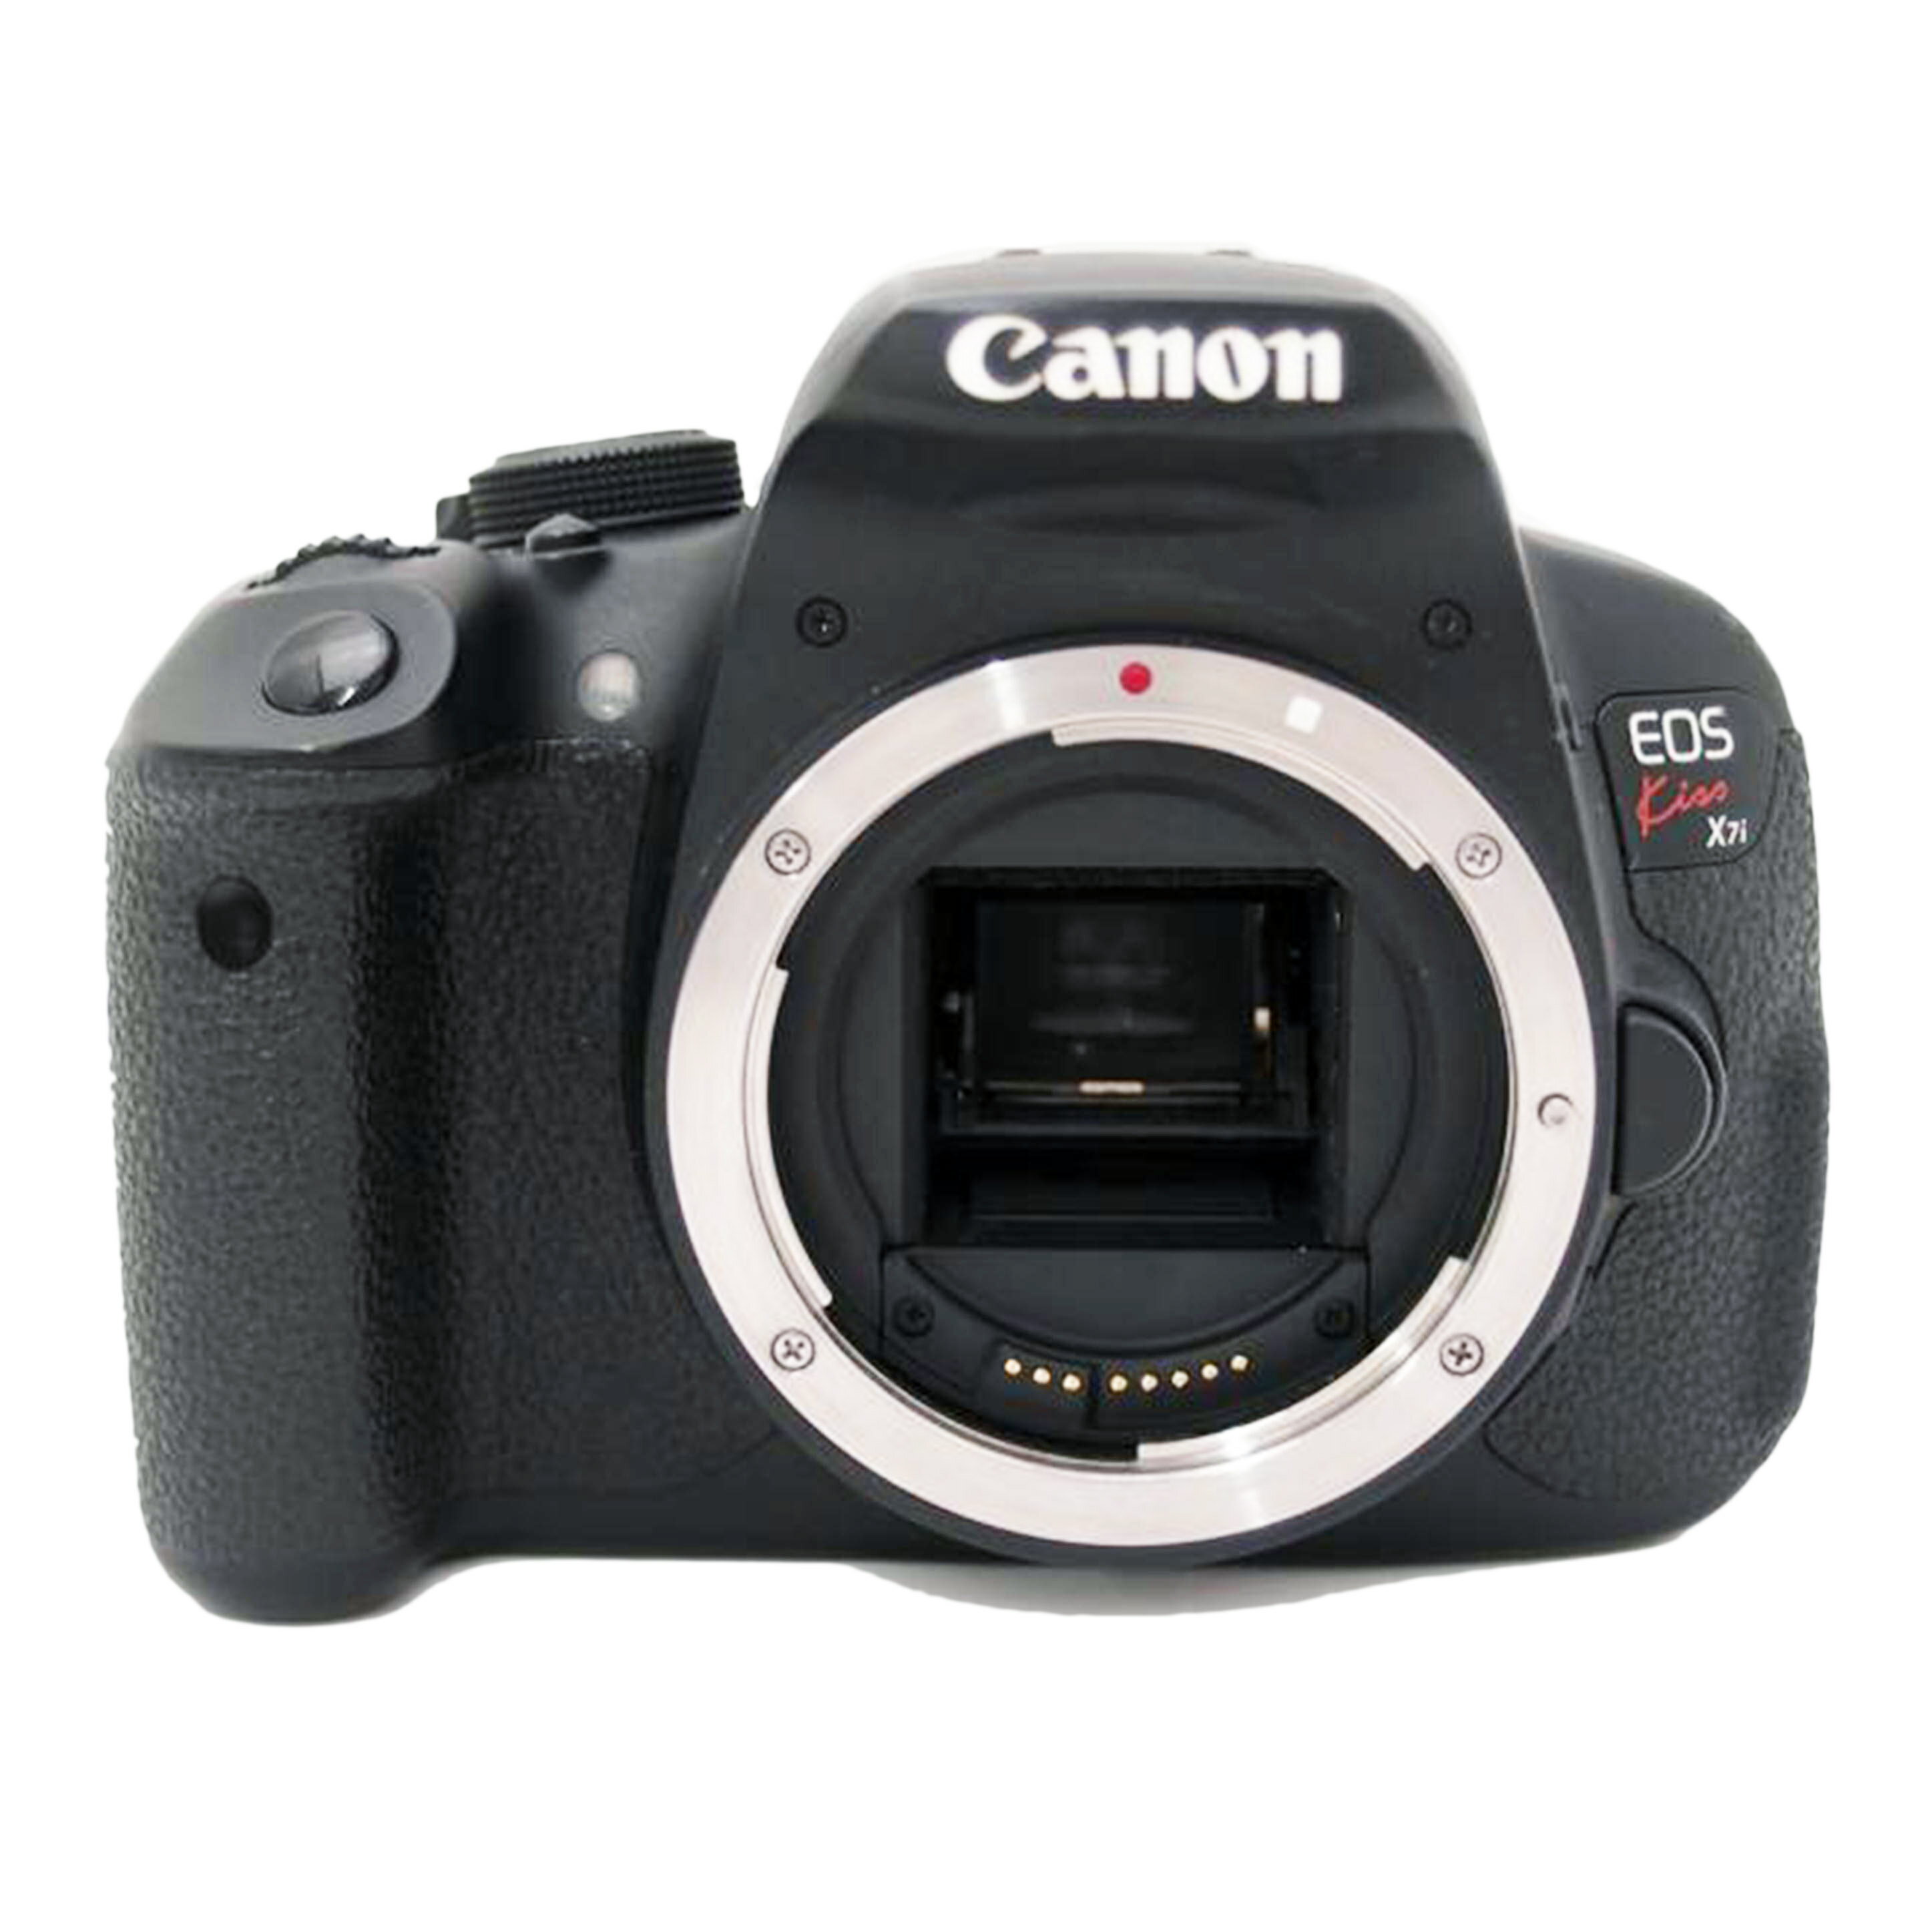 Canon キャノン/デジタル一眼ボディ/EOS Kiss X7i/BCランク/69【中古】